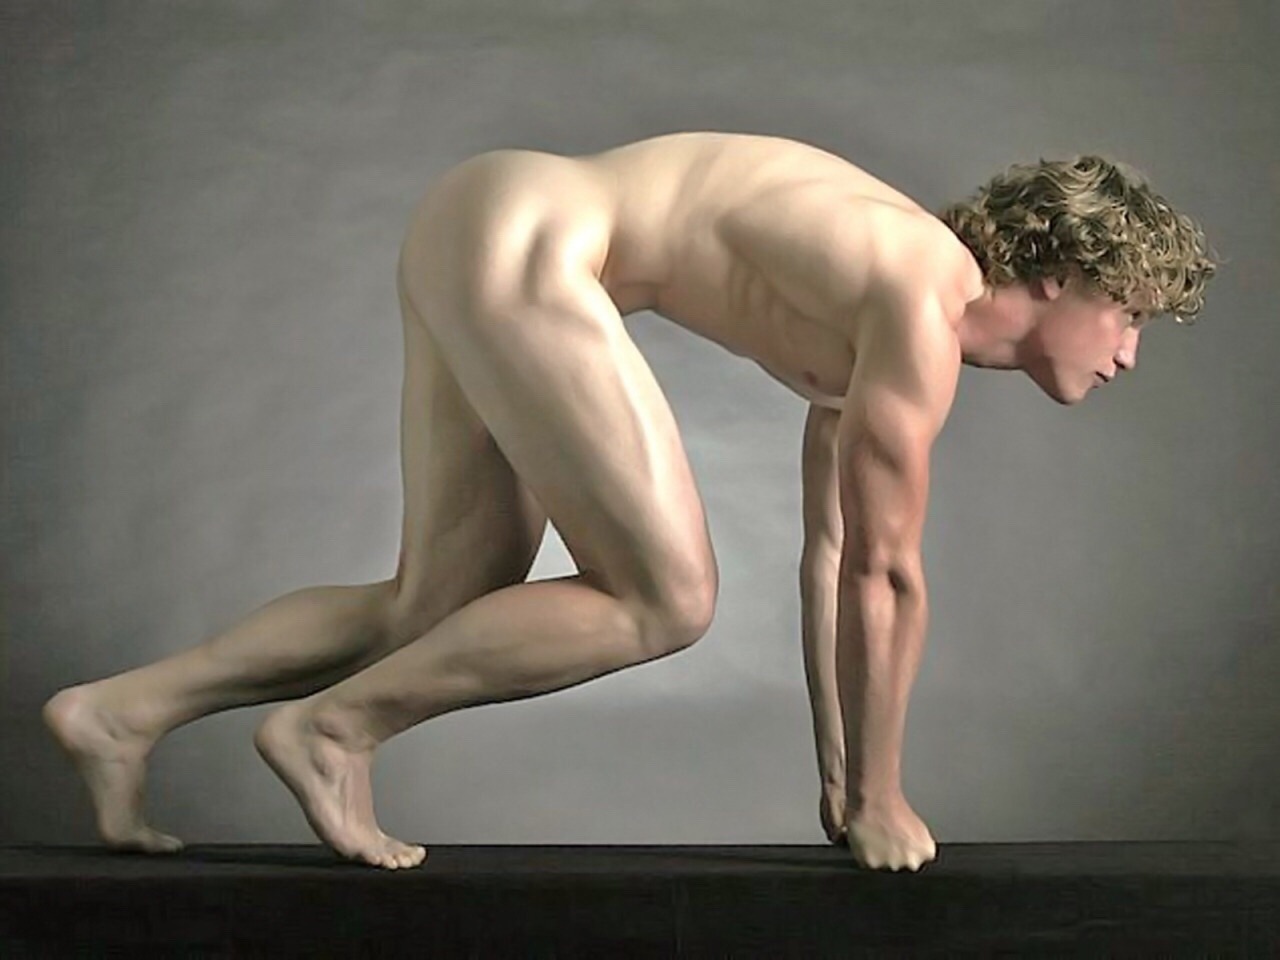 Vittorio carvelli erotic male nude studies